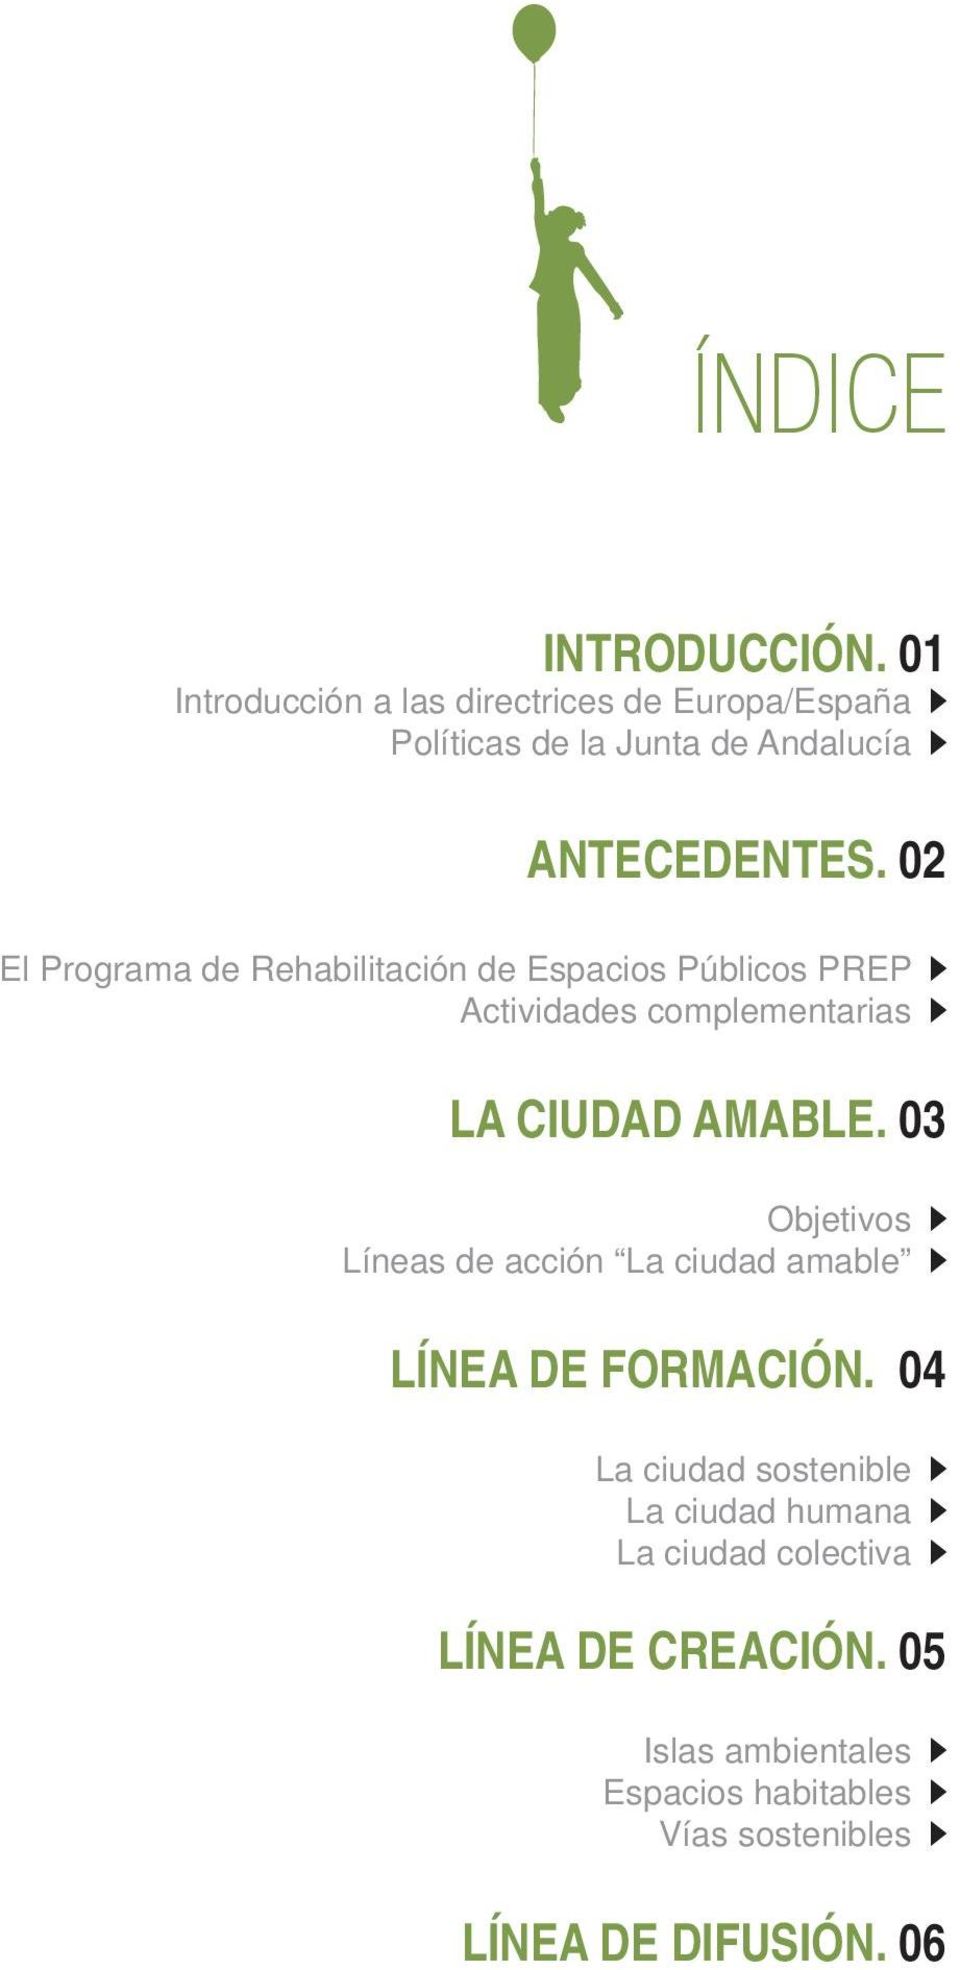 02 El Programa de Rehabilitación de Espacios Públicos PREP Actividades complementarias LA CIUDAD AMABLE.